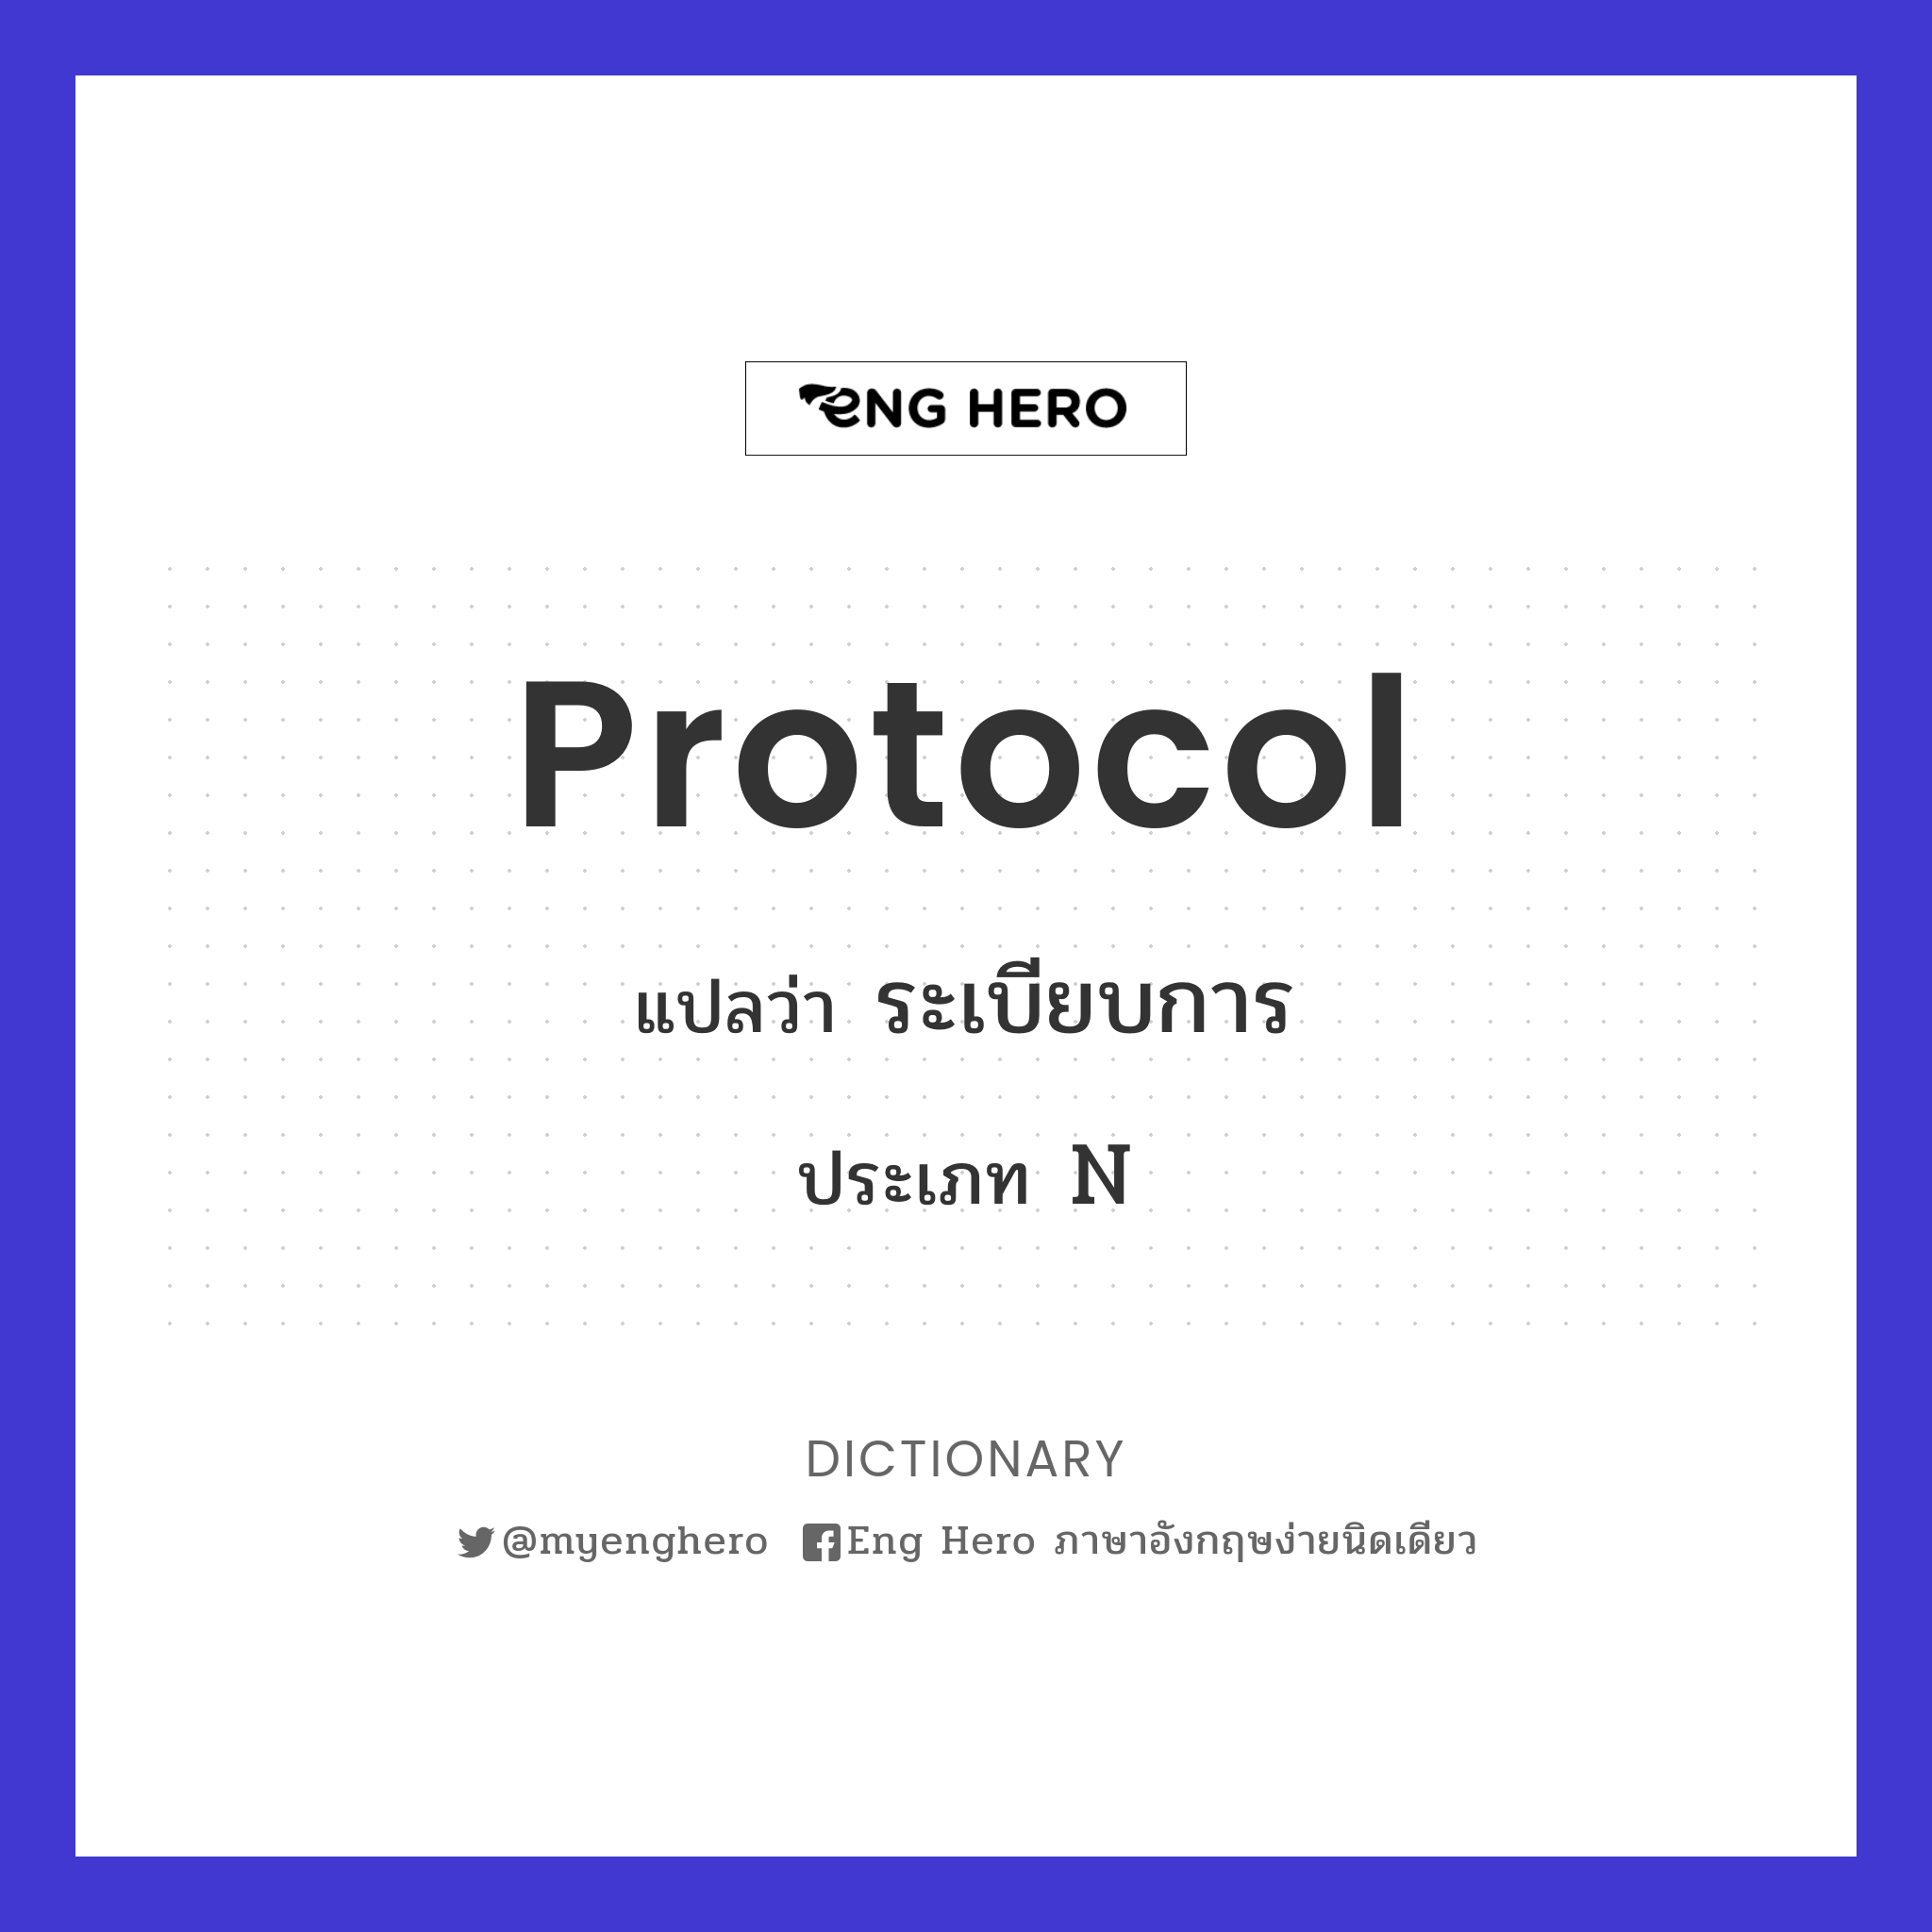 protocol